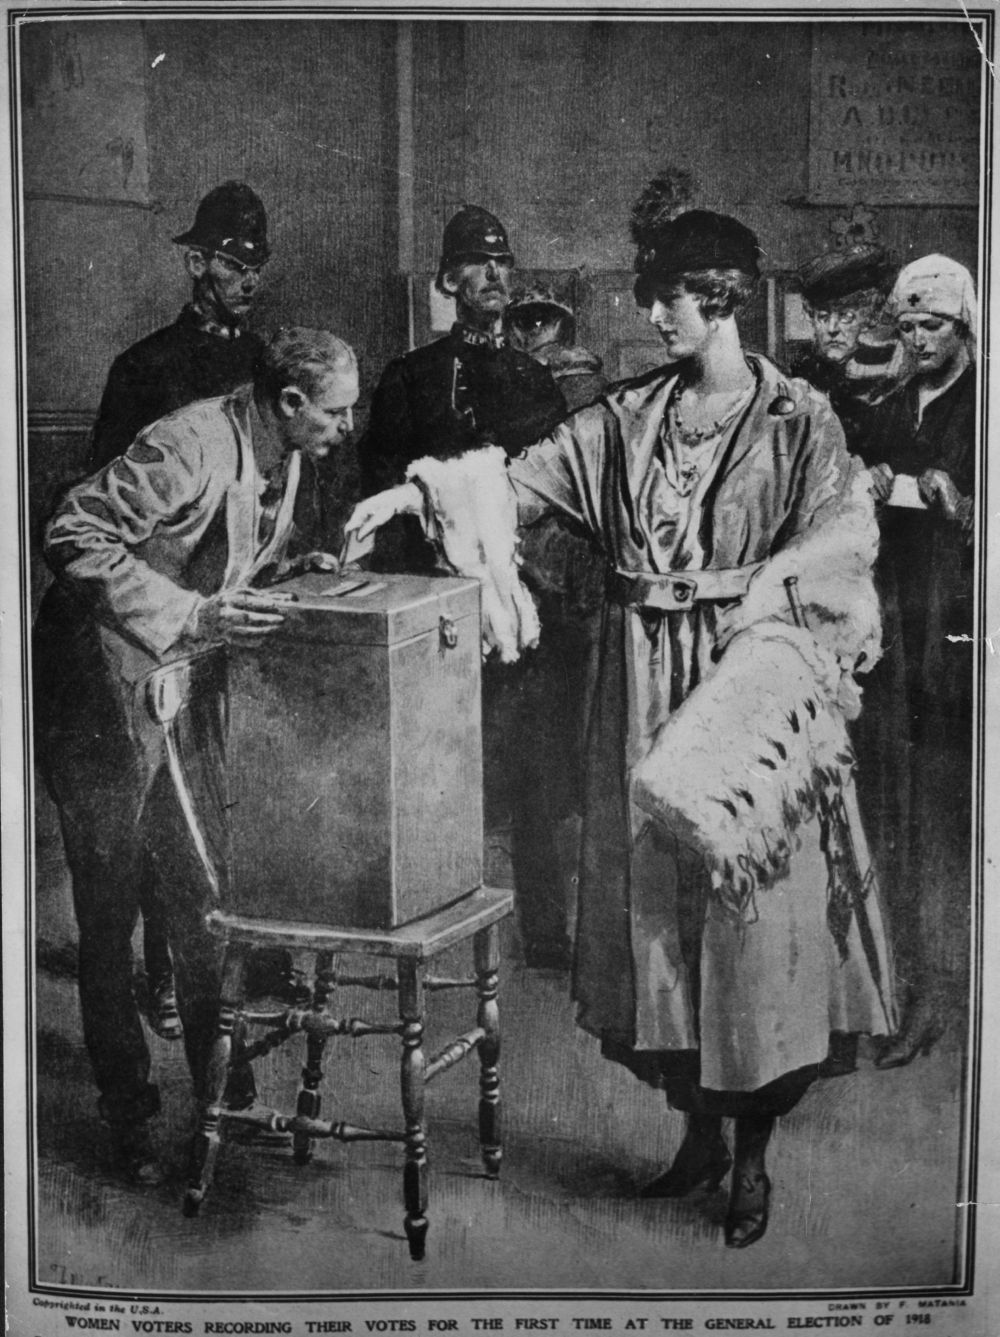 1918 година. За пръв път жените във Великобритания гласуват на общи избори